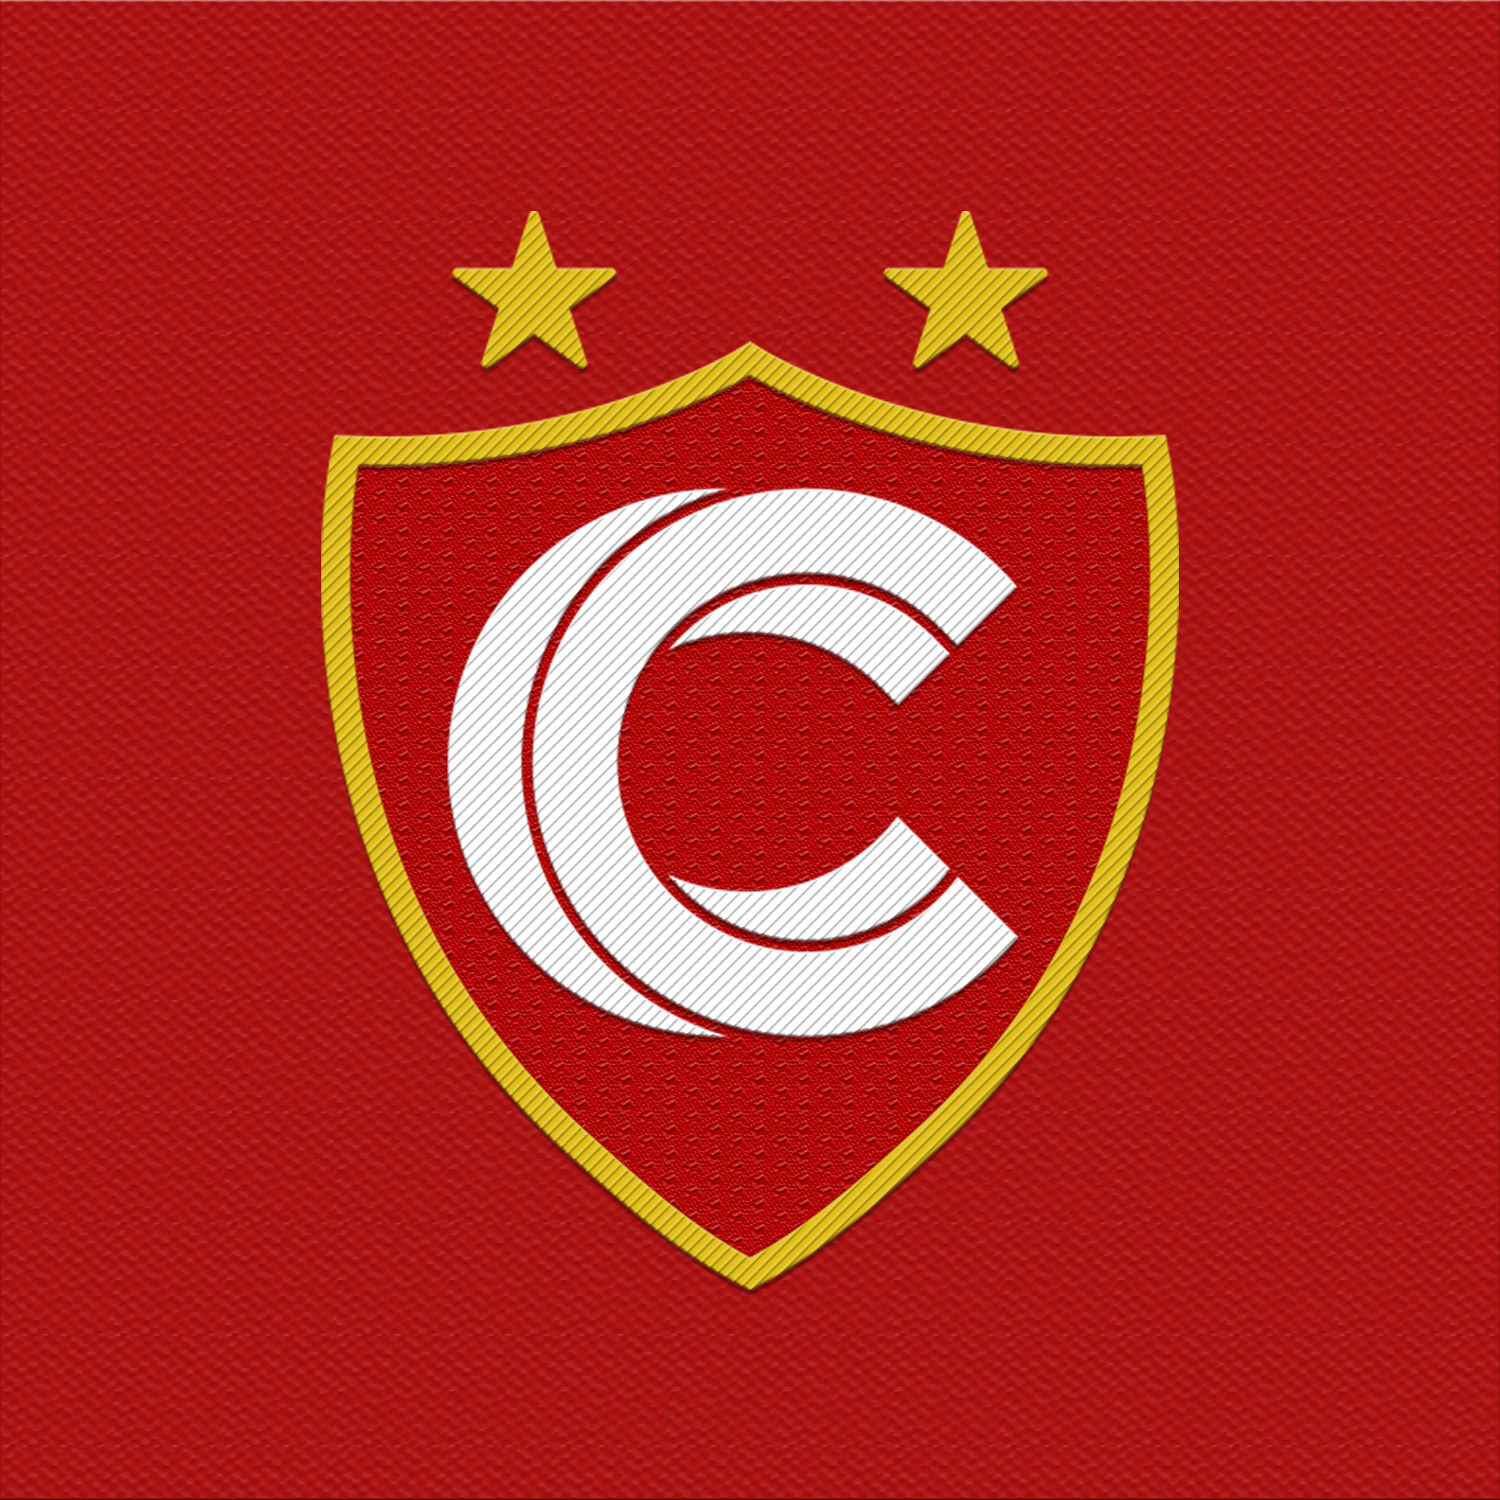 24- Club Sportivo Cienciano